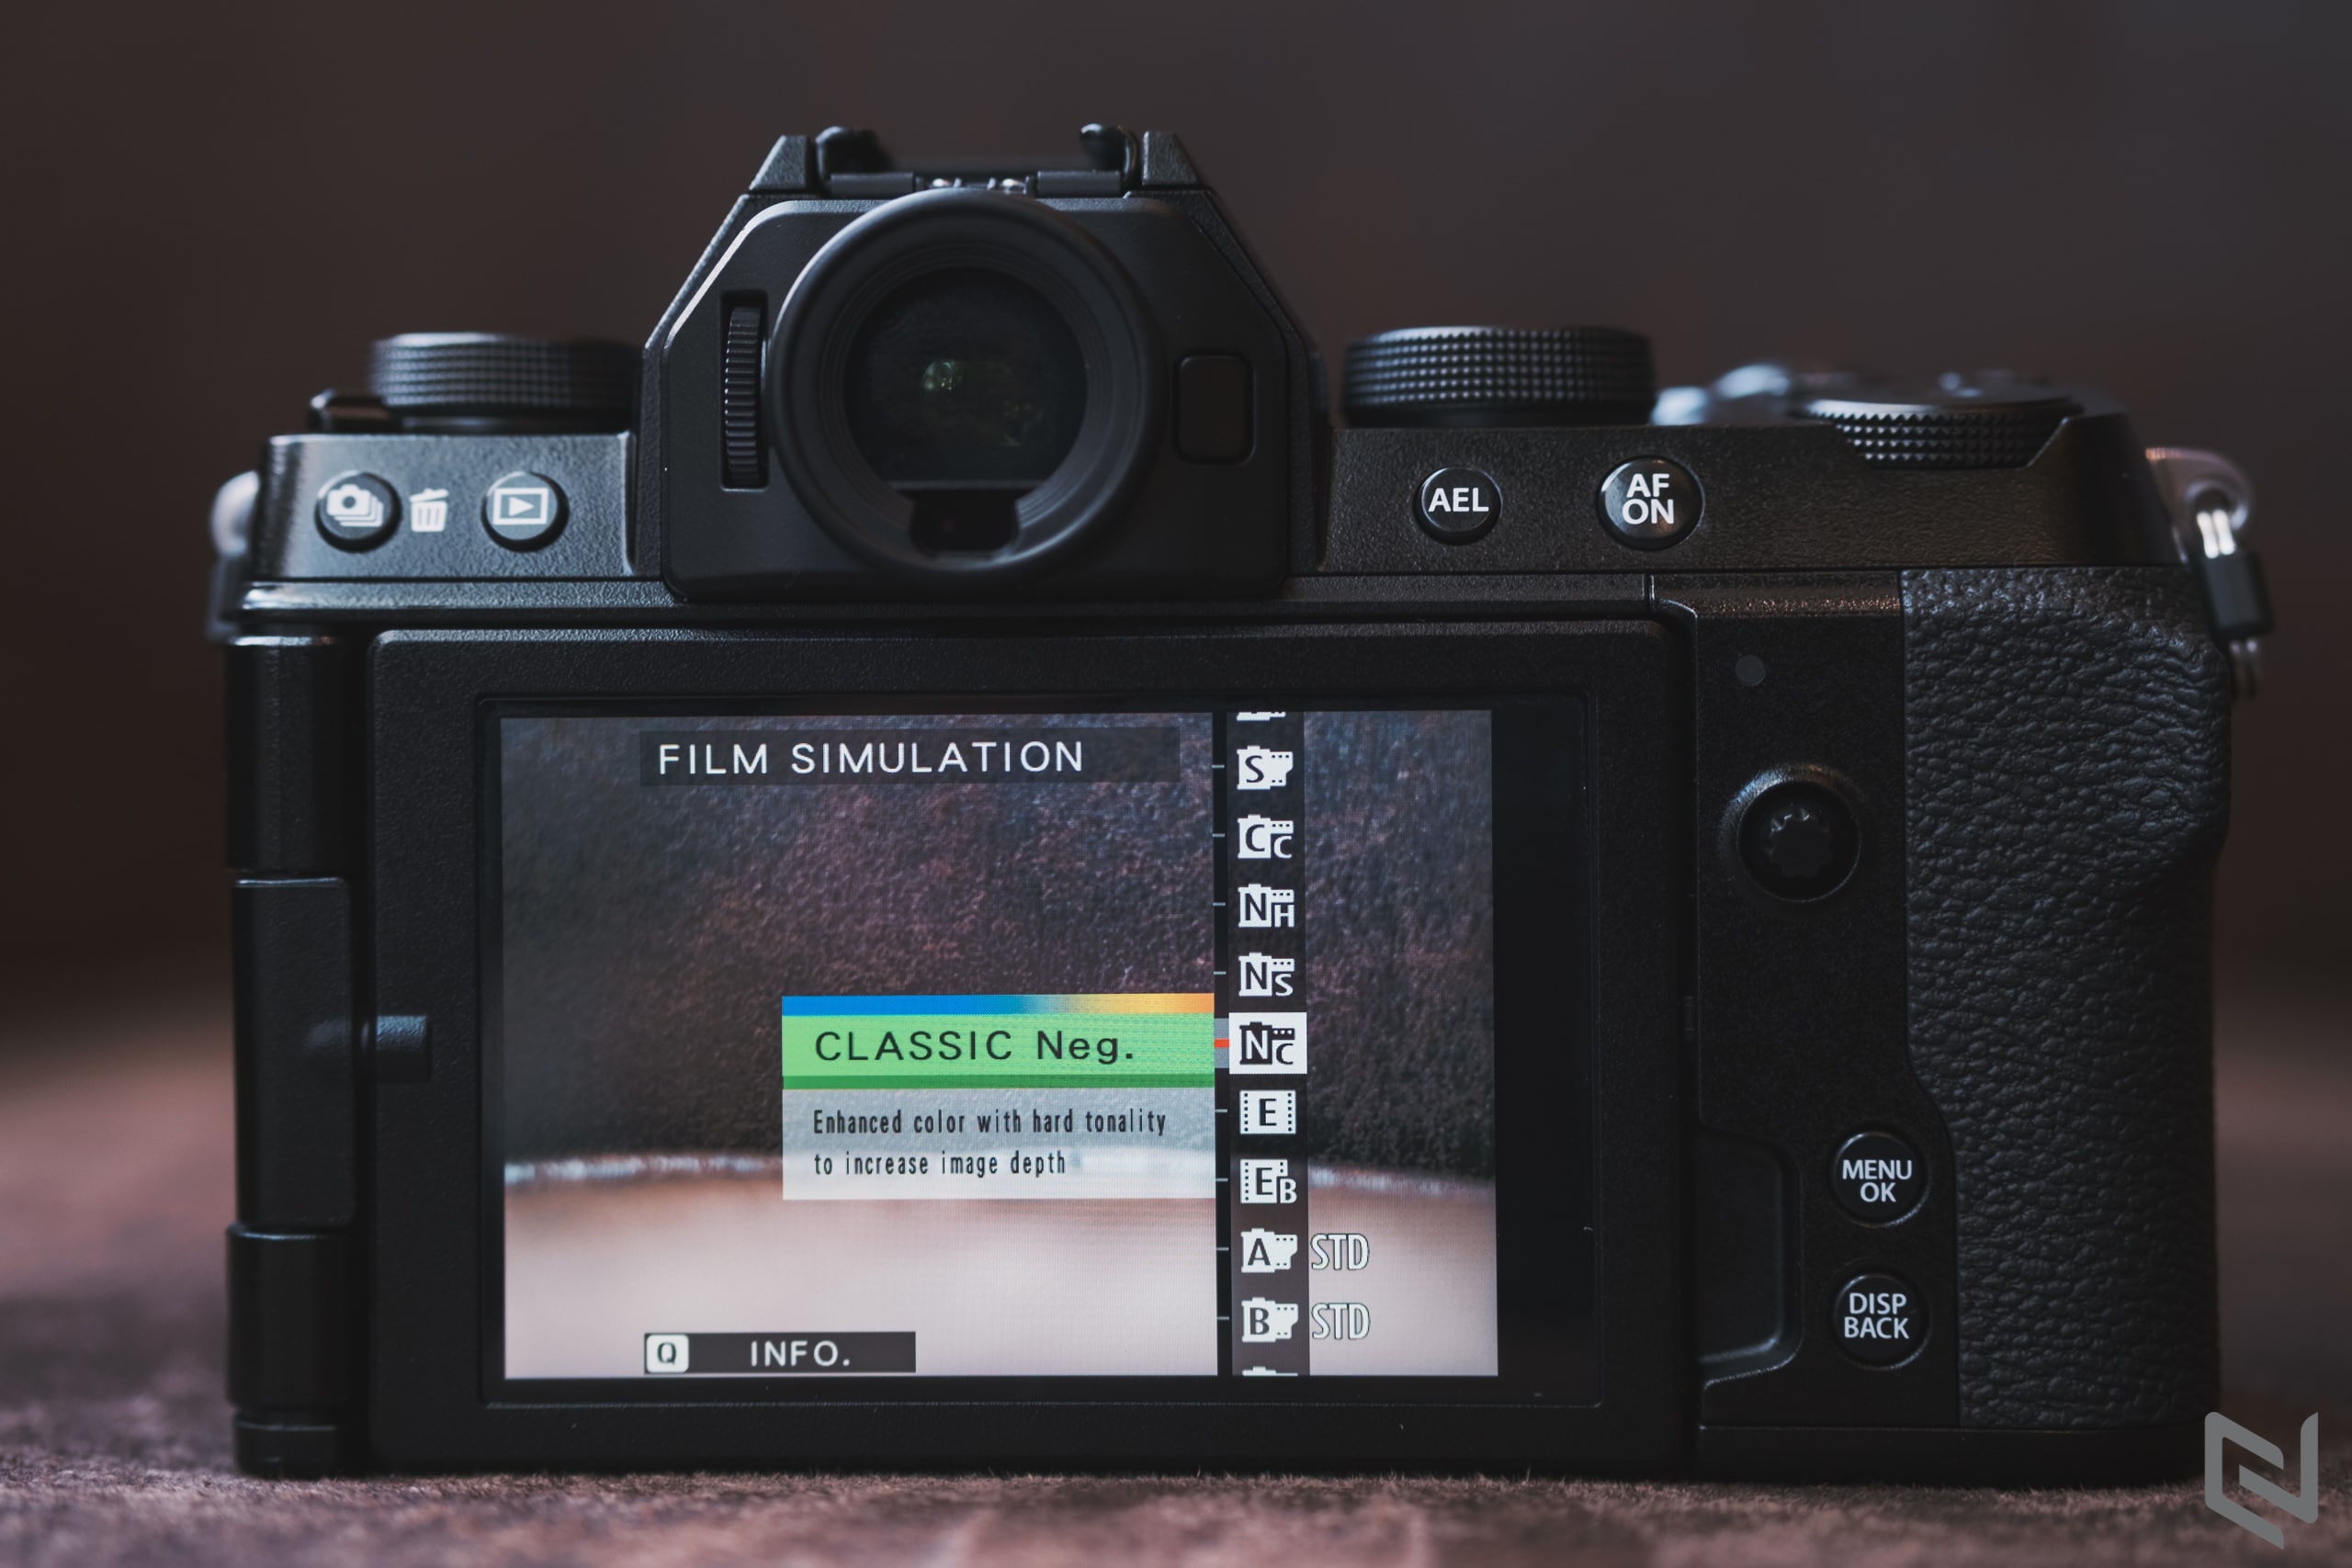 Trên tay Fujifilm X-S10: Chống rung thân máy rất tốt, nhỏ mà có võ